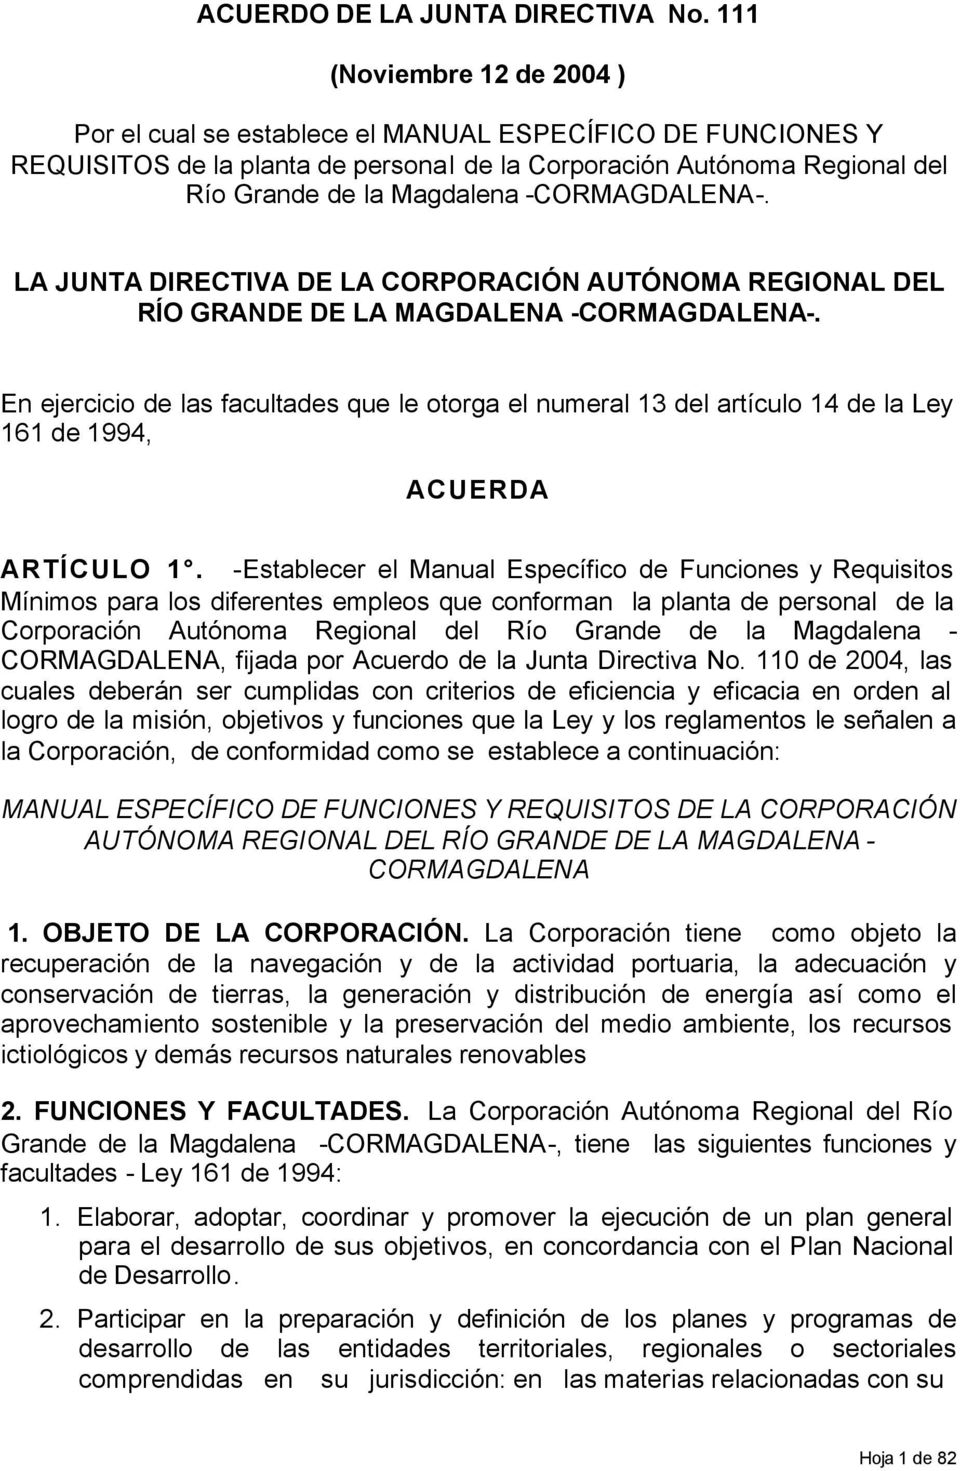 -CORMAGDALENA-. LA JUNTA DIRECTIVA DE LA CORPORACIÓN AUTÓNOMA REGIONAL DEL RÍO GRANDE DE LA MAGDALENA -CORMAGDALENA-.